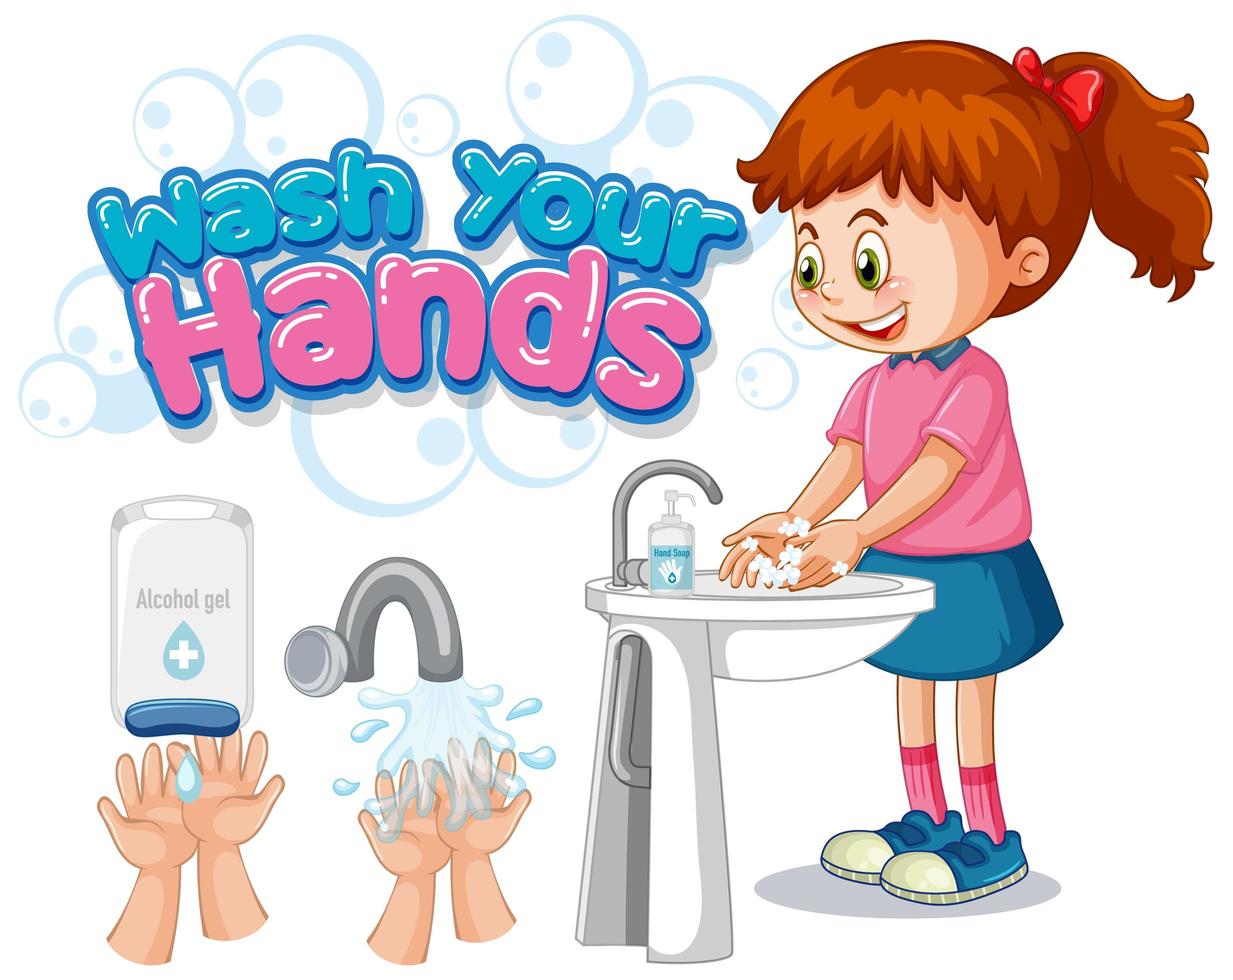 Bambino Kids Wash Your Hands savon liquide mains pour enfant